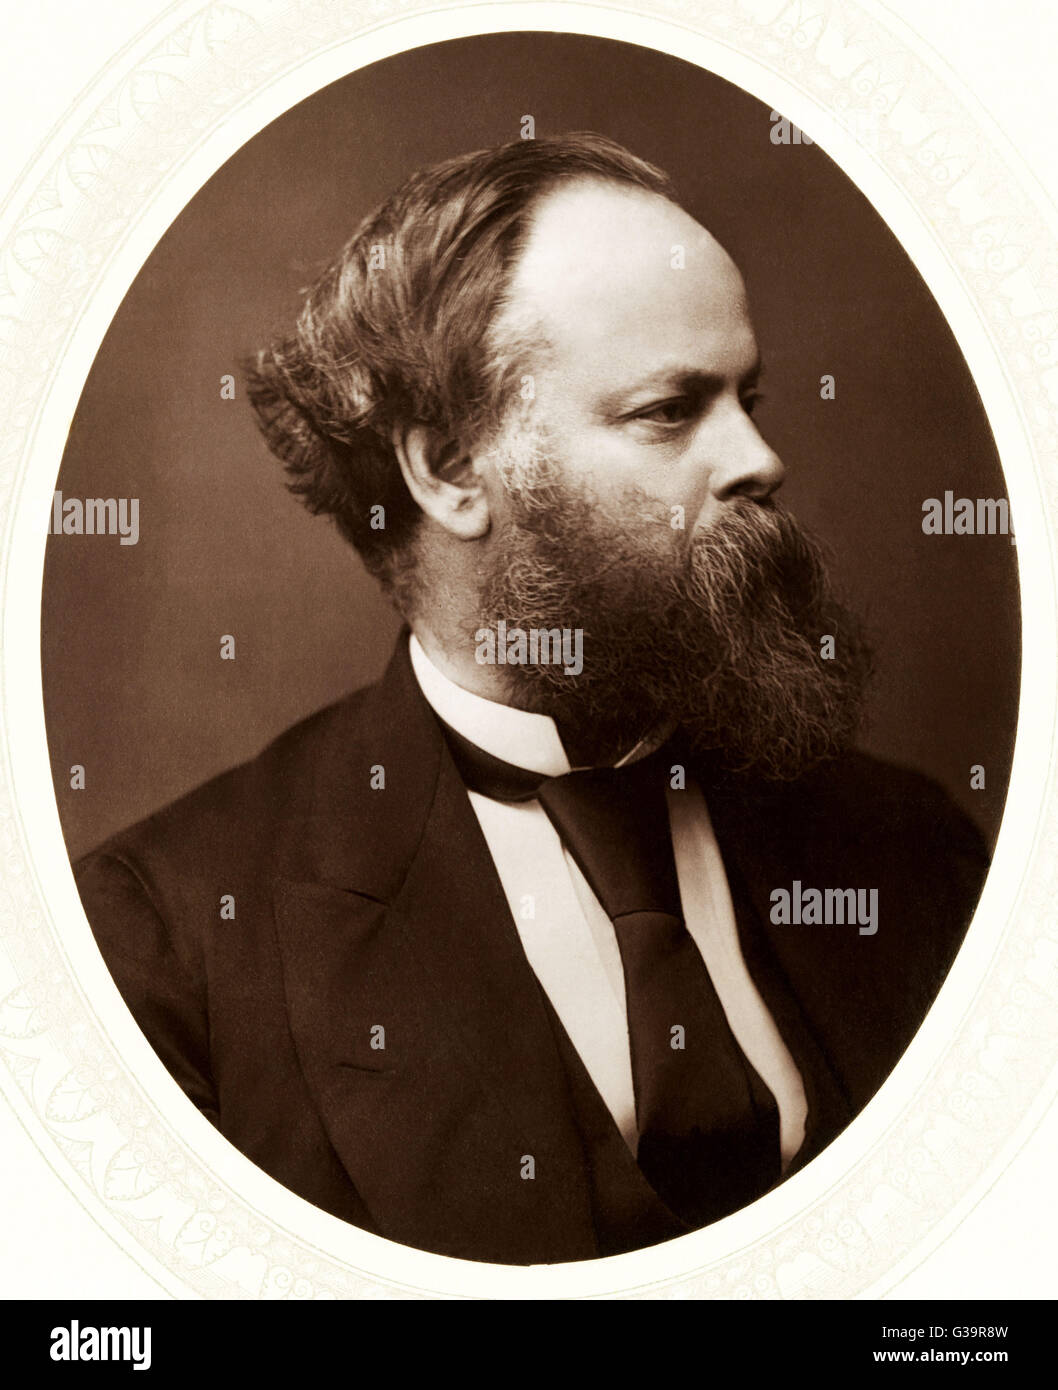 SAMUEL PLIMSOLL estadista, el responsable de la introducción de la "línea Plimsoll" para regular la carga de buques Fecha: 1824 - 1898 Foto de stock